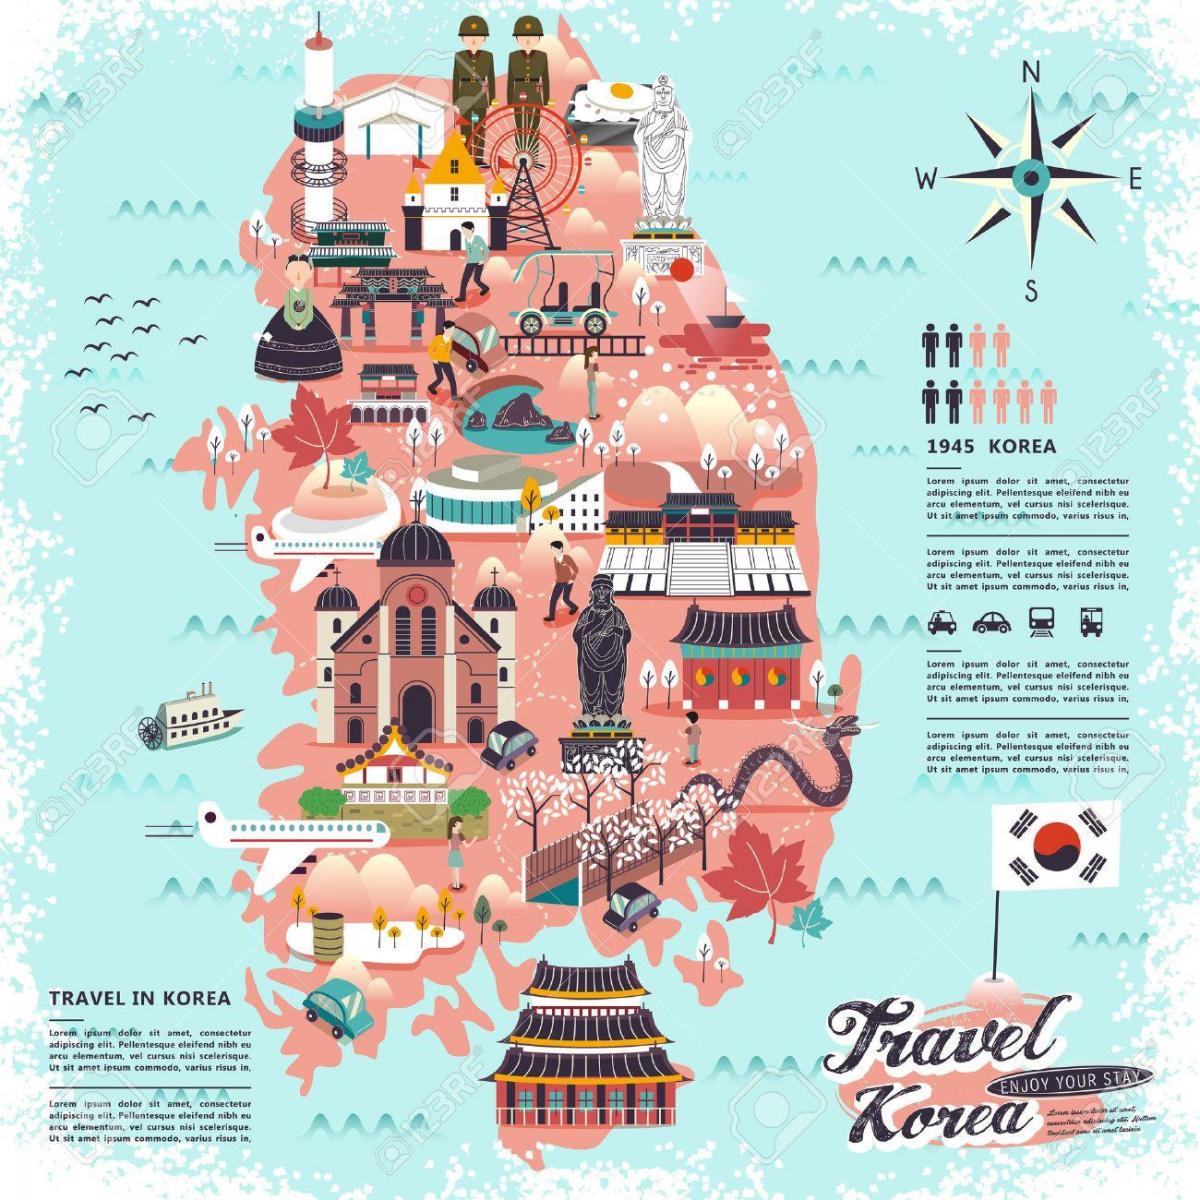 туристическая карта Южной Кореи (РКК)